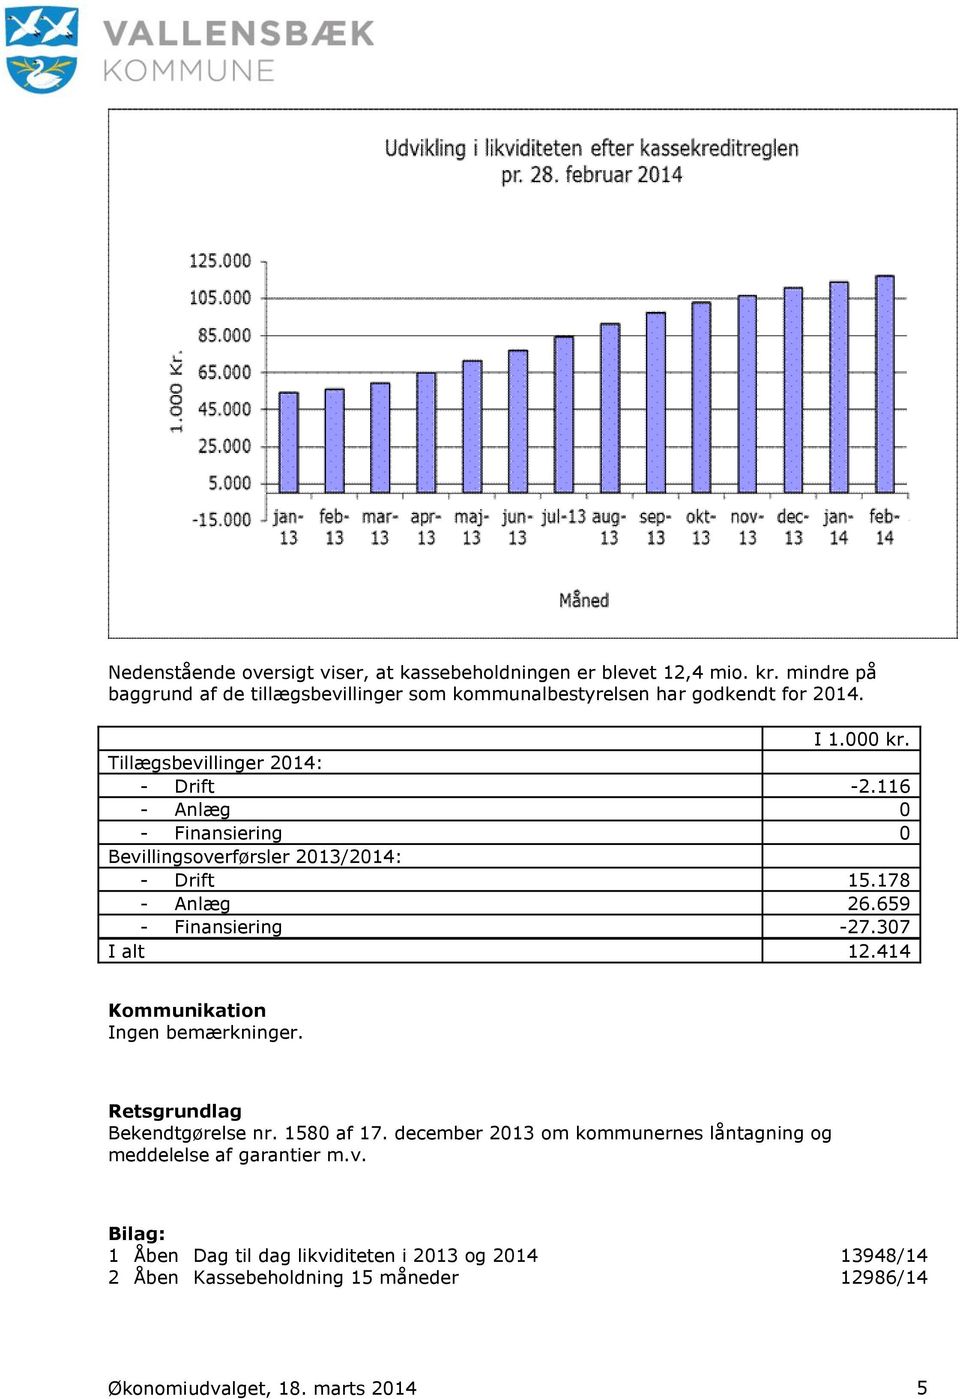 116 - Anlæg 0 - Finansiering 0 Bevillingsoverførsler 2013/2014: - Drift 15.178 - Anlæg 26.659 - Finansiering -27.307 I alt 12.